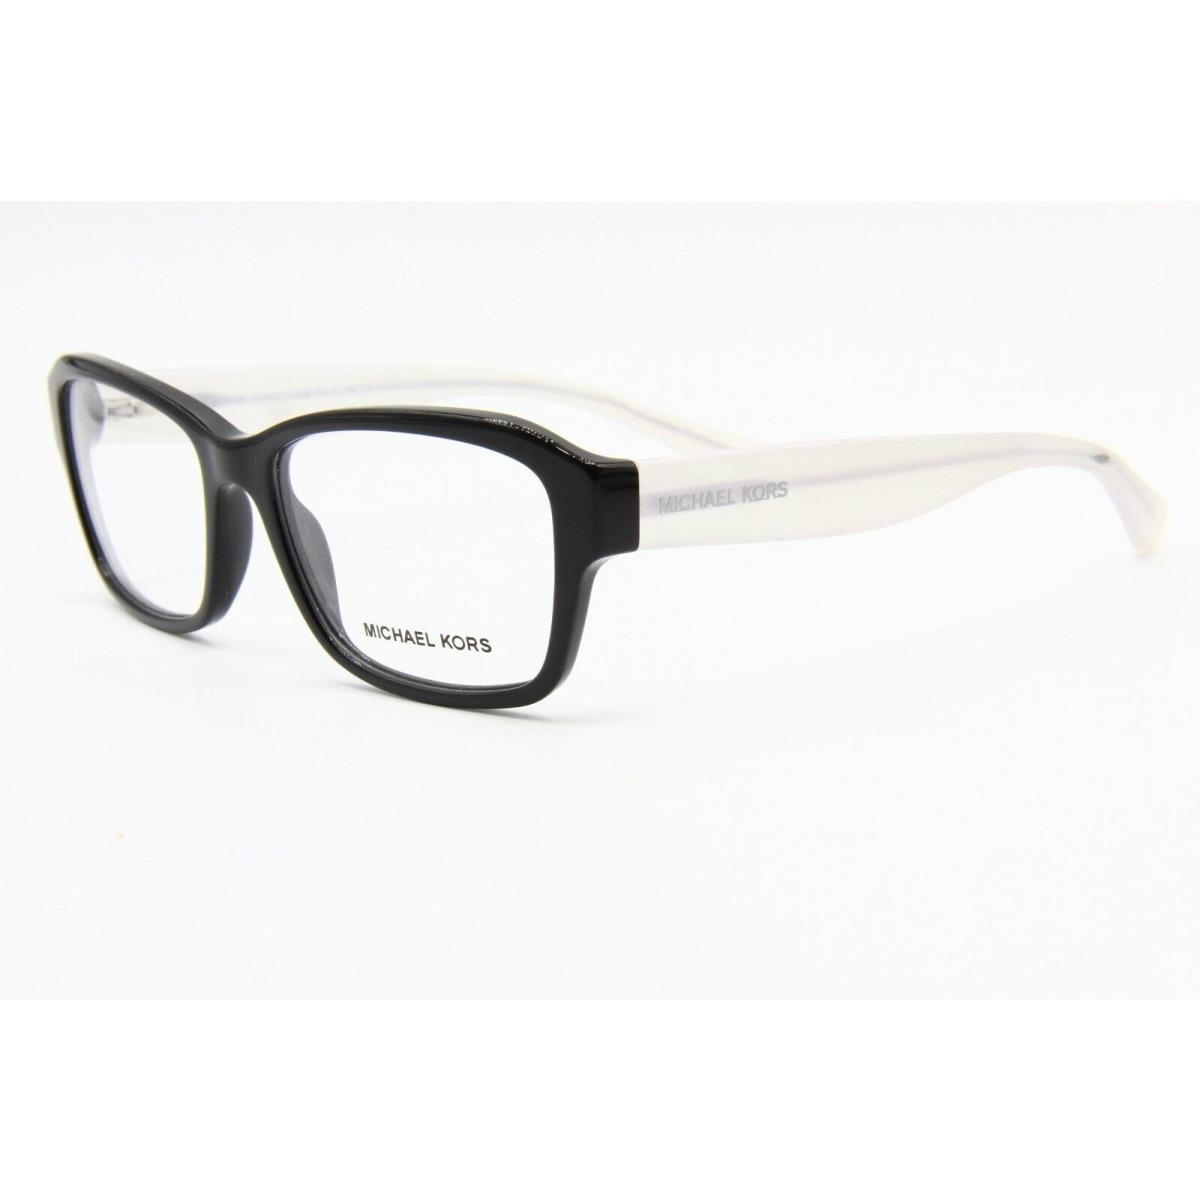 Michael Kors MK 4036 3196 Black Eyeglasses Frame MK 4036 52-16